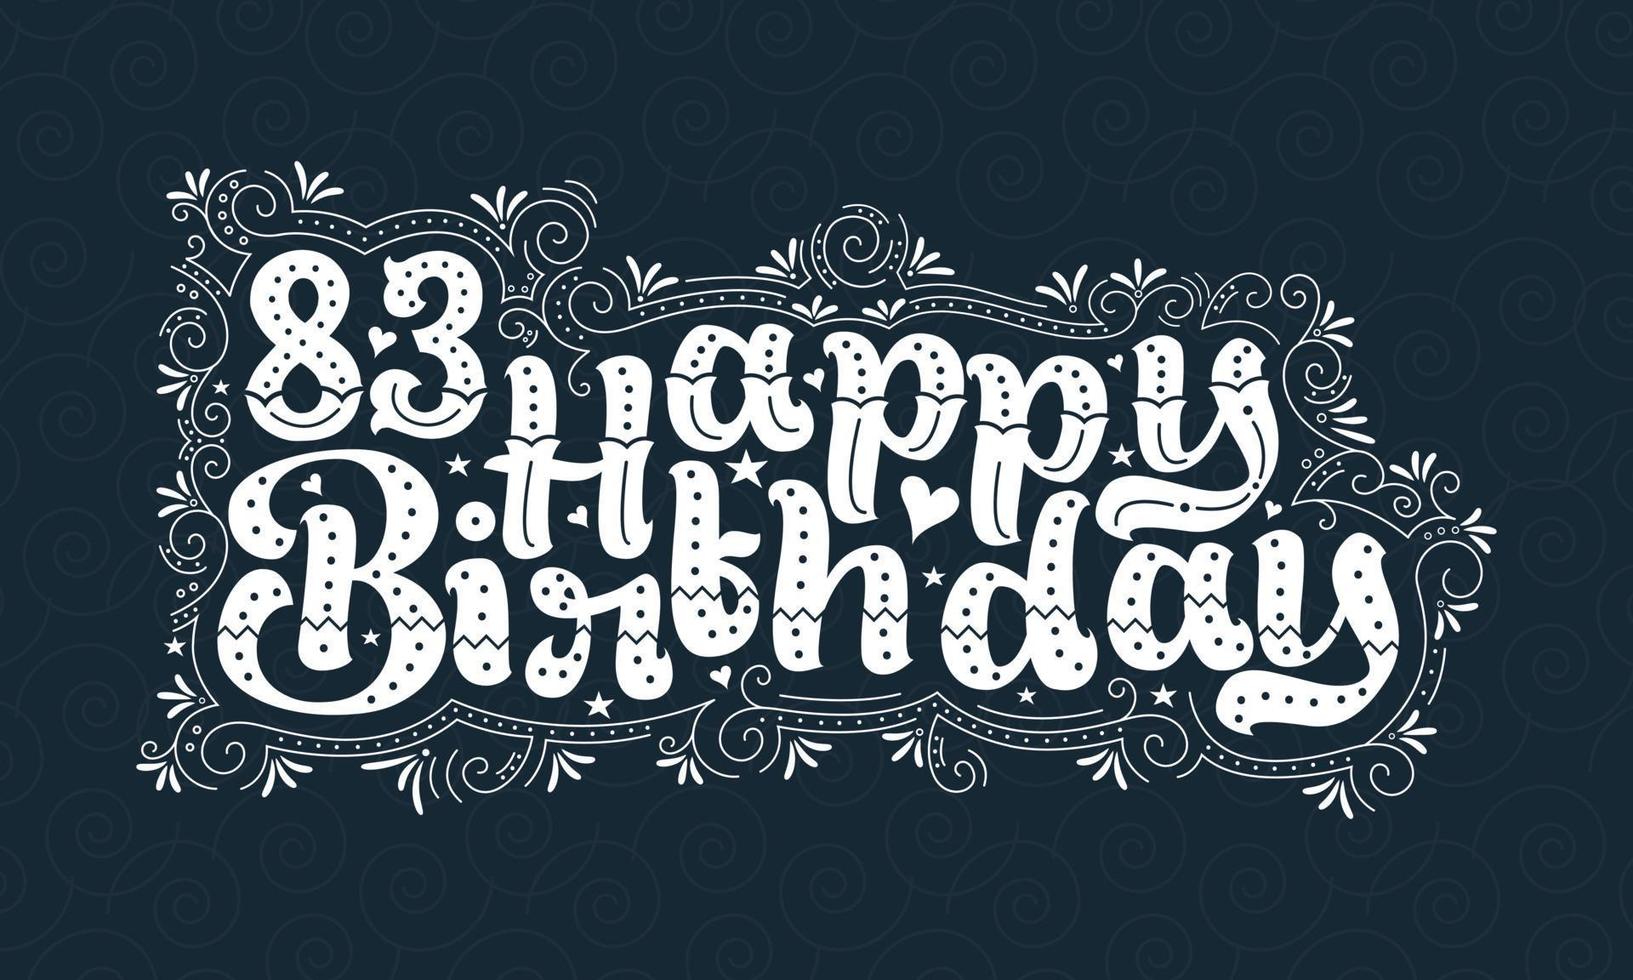 83a scritta di buon compleanno, 83 anni di bellissimo design tipografico con punti, linee e foglie. vettore